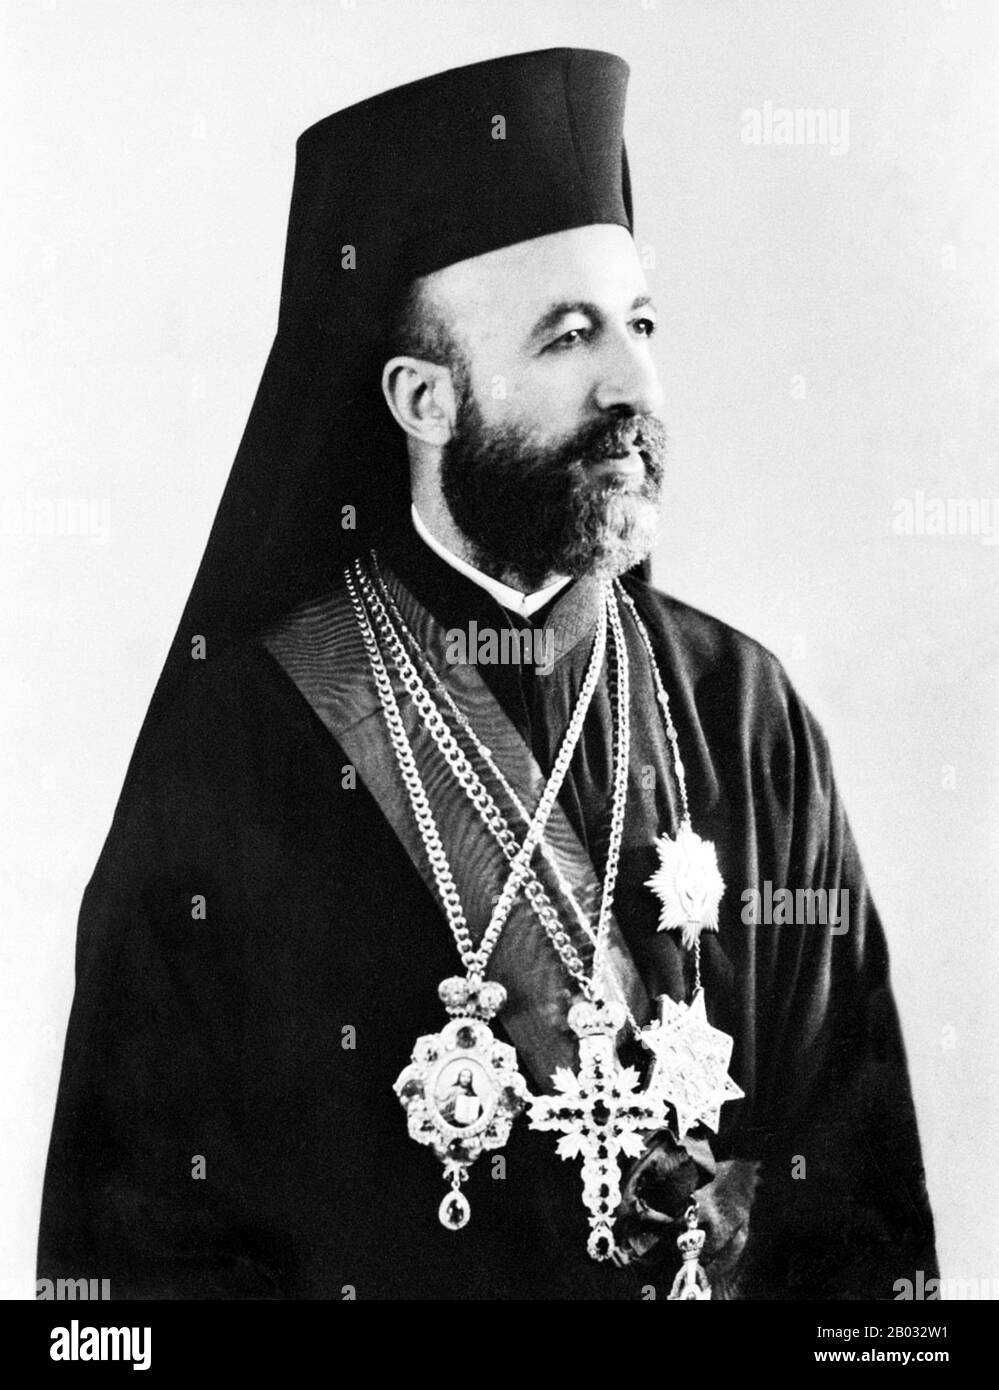 Makarios III, nato Michail Christodoulou Mouskos (dal 13 agosto 1913 al 3 agosto 1977), è stato arcivescovo e primate della Chiesa autocefala di Cipro, una Chiesa greco-ortodossa (dal 1950 al 1977) e primo presidente della Repubblica di Cipro (dal 1960 al 1974 e dal 1974 al 1977). Nei suoi tre termini di presidente di Cipro (1960-1977), egli è sopravvissuto a quattro tentativi di omicidio e un colpo di stato del 1974. Foto Stock